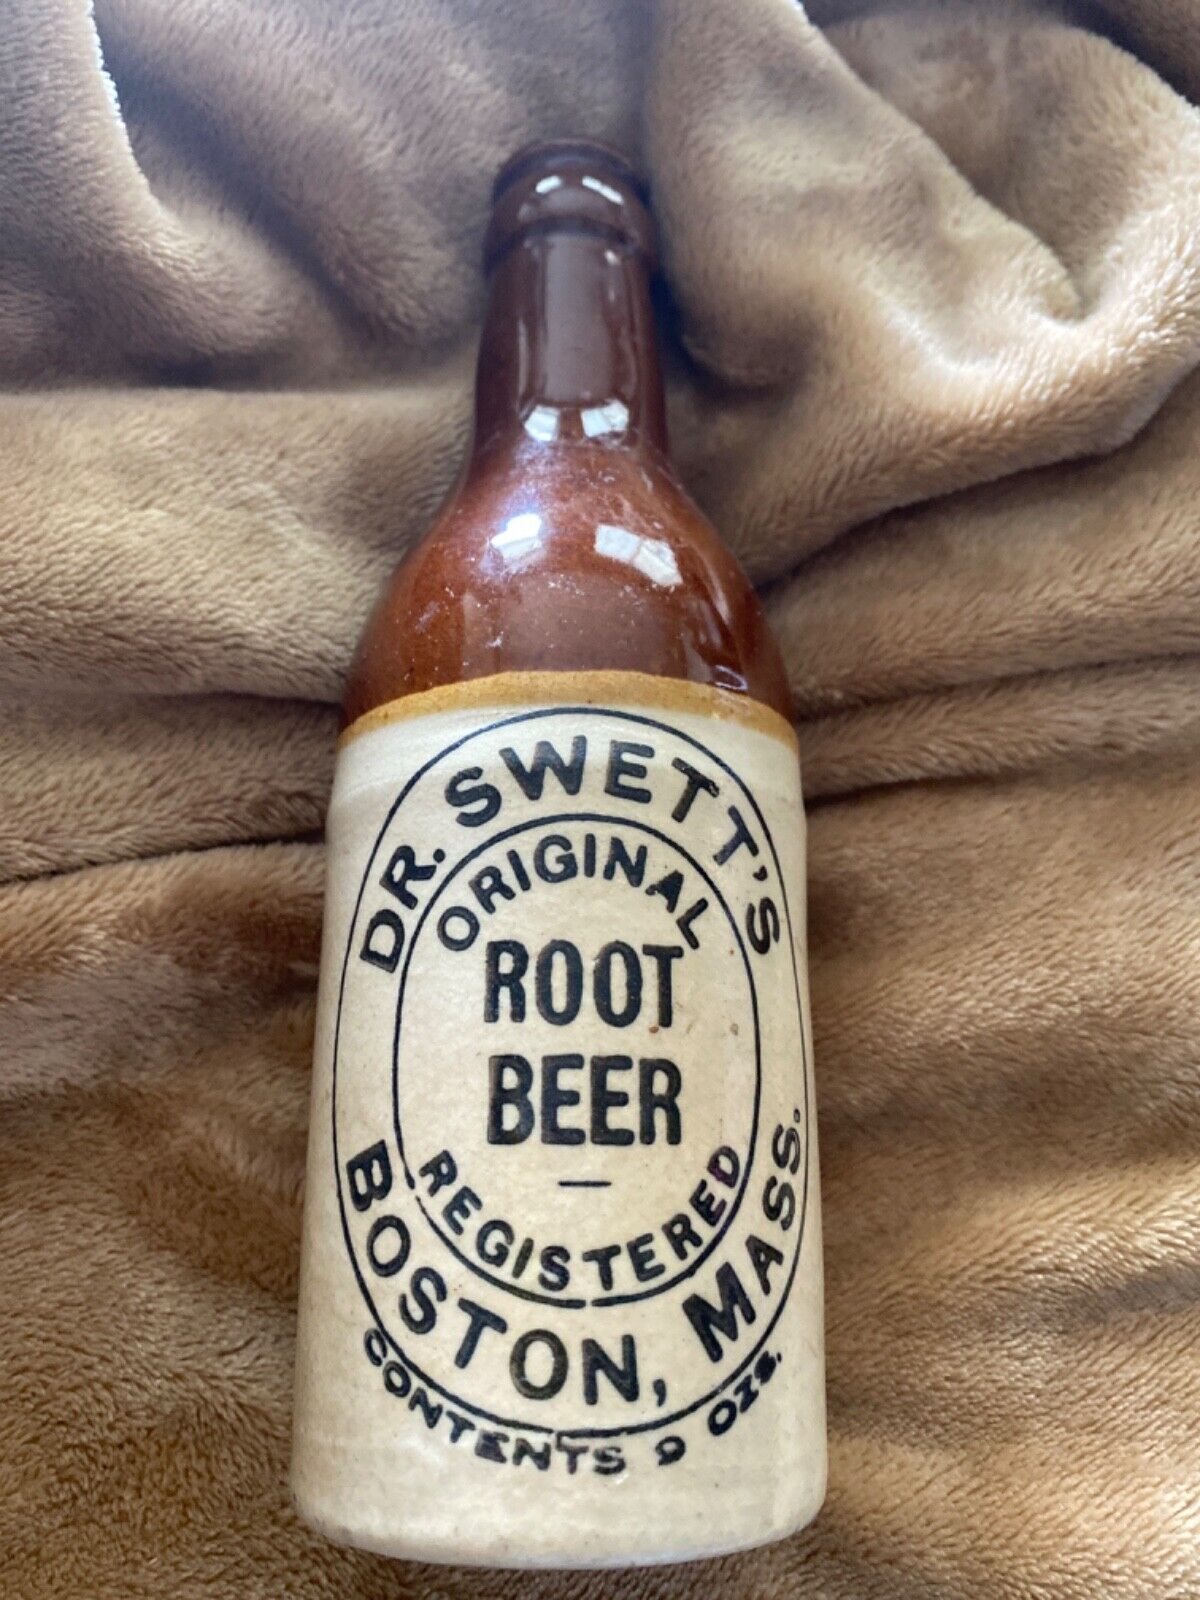 Vintage Dr. Swett’s bottle